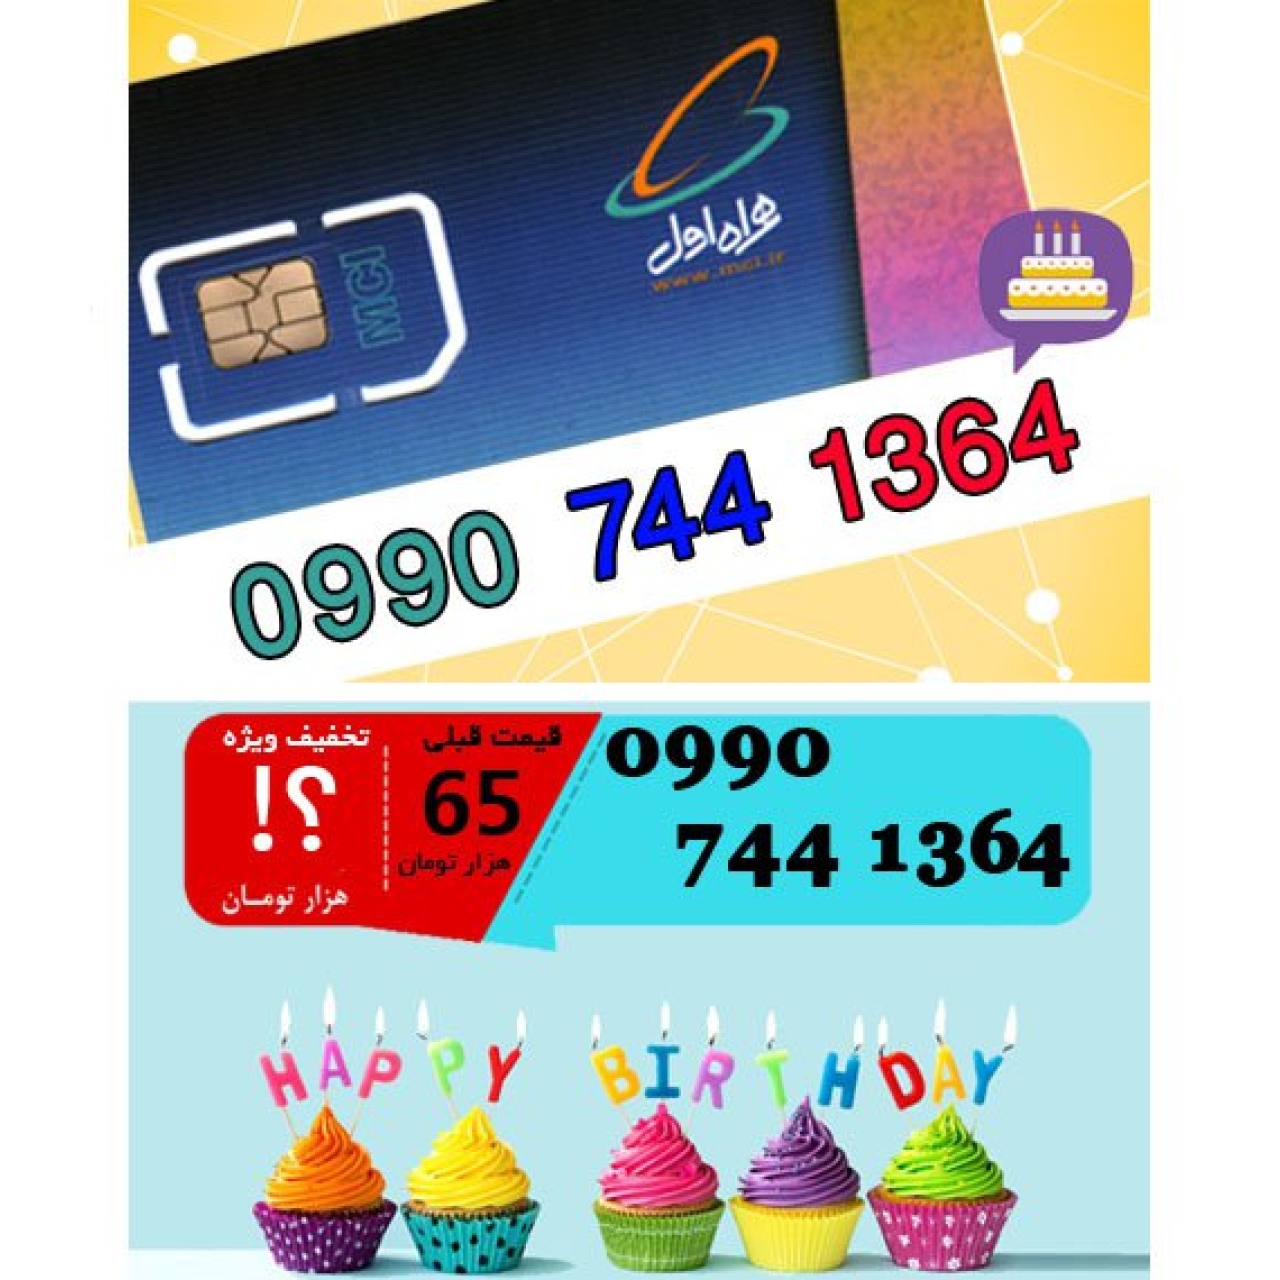 سیم کارت اعتباری همراه اول 09907441364 تاریخ تولد